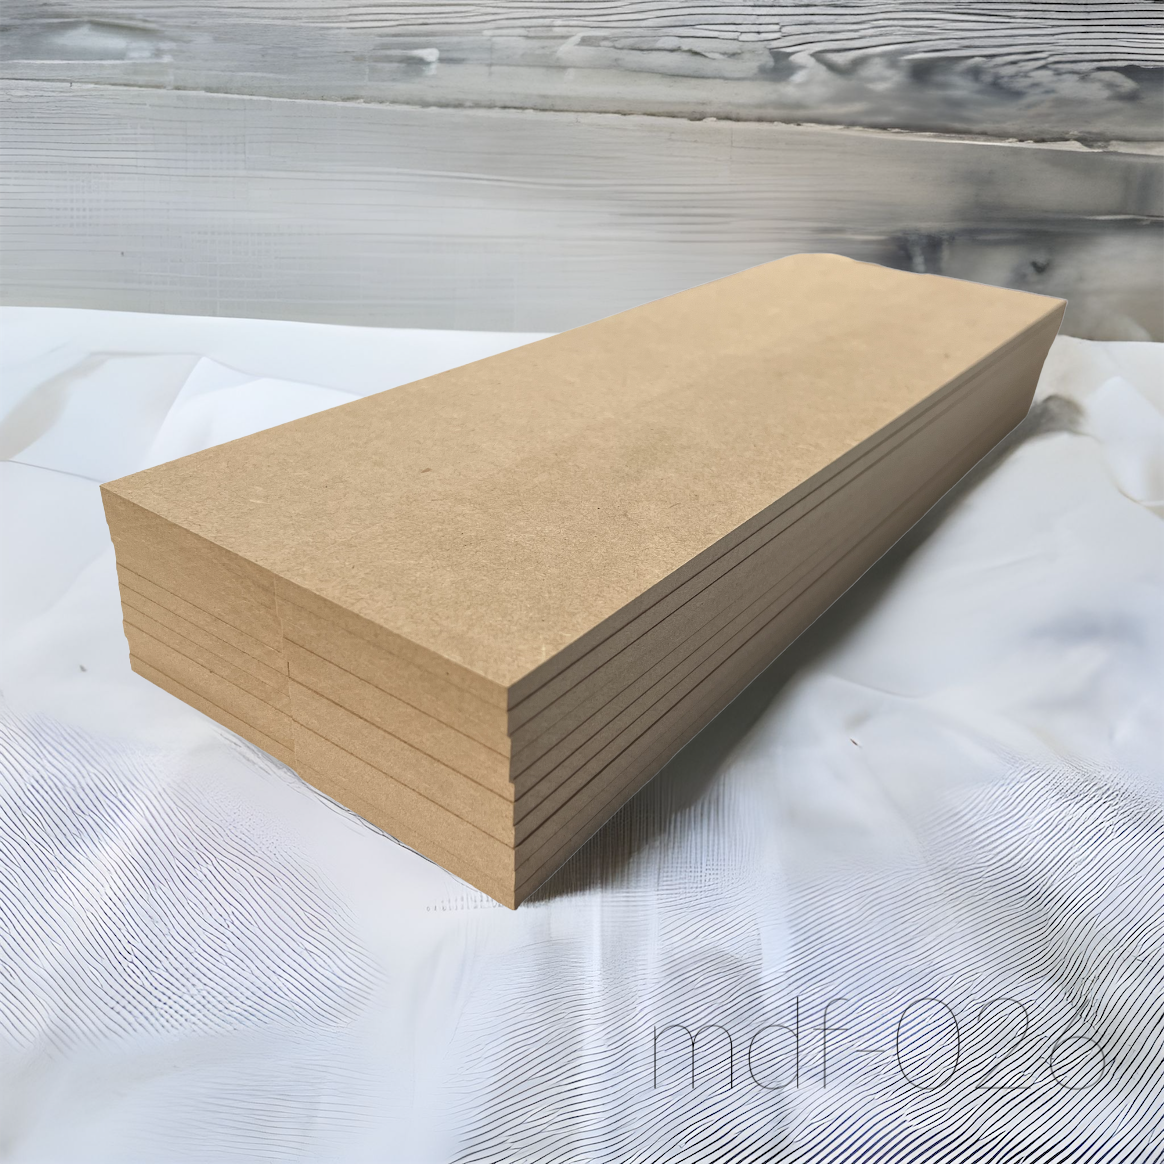 売り出し 木材 MDF材 DB 2.5mm厚 約900mm×約900mm 10枚セット MDFボード MDF板 板 diy 日曜大工 材料 端材  事業所向け